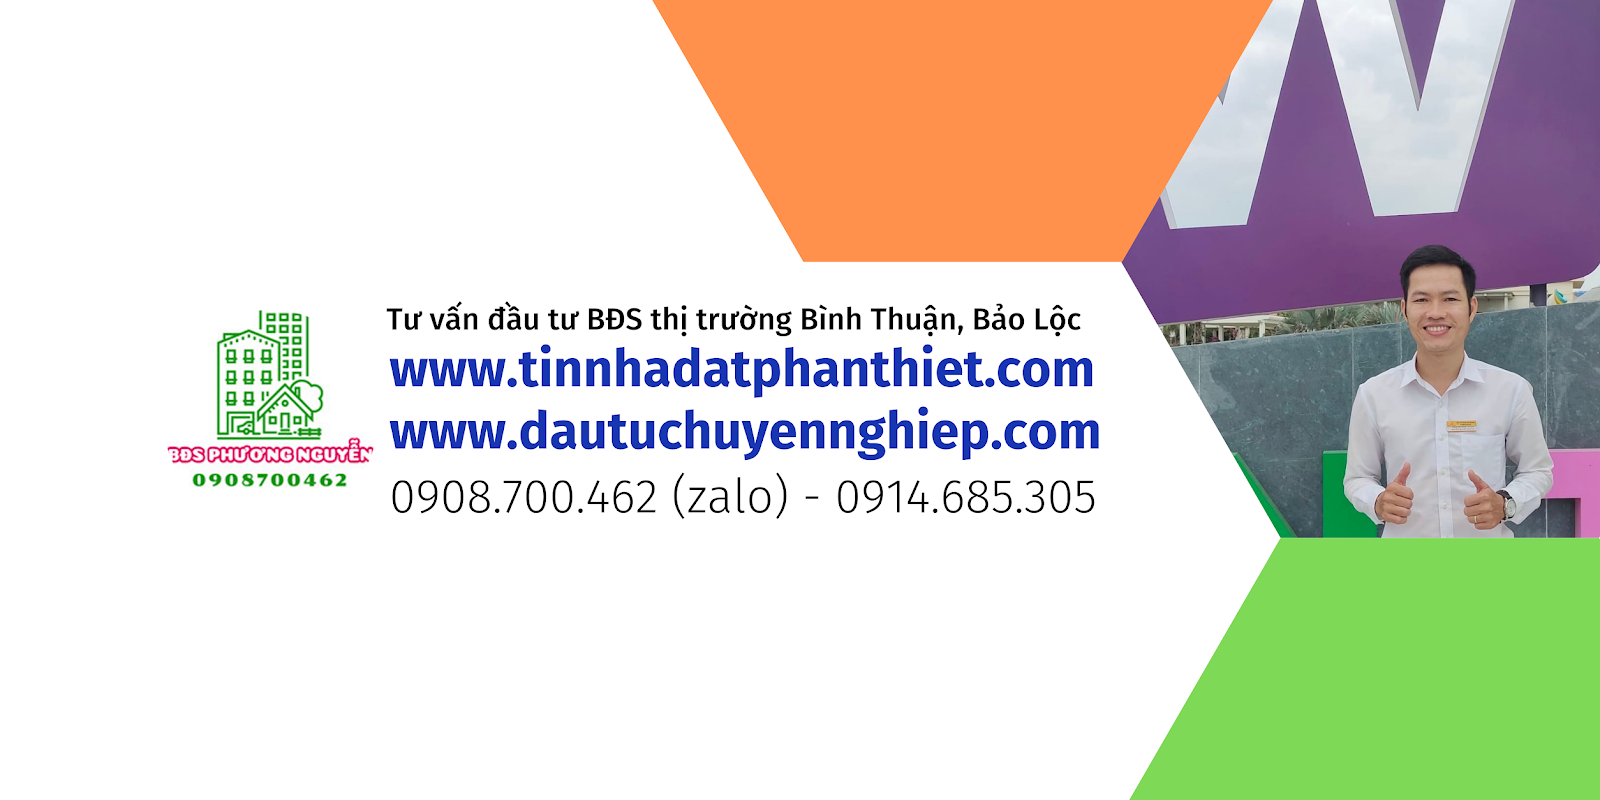 Bất động sản Phan Thiết, đất nền bình thuận, nhà đất phan thiết - Hotline: 0908.700.462